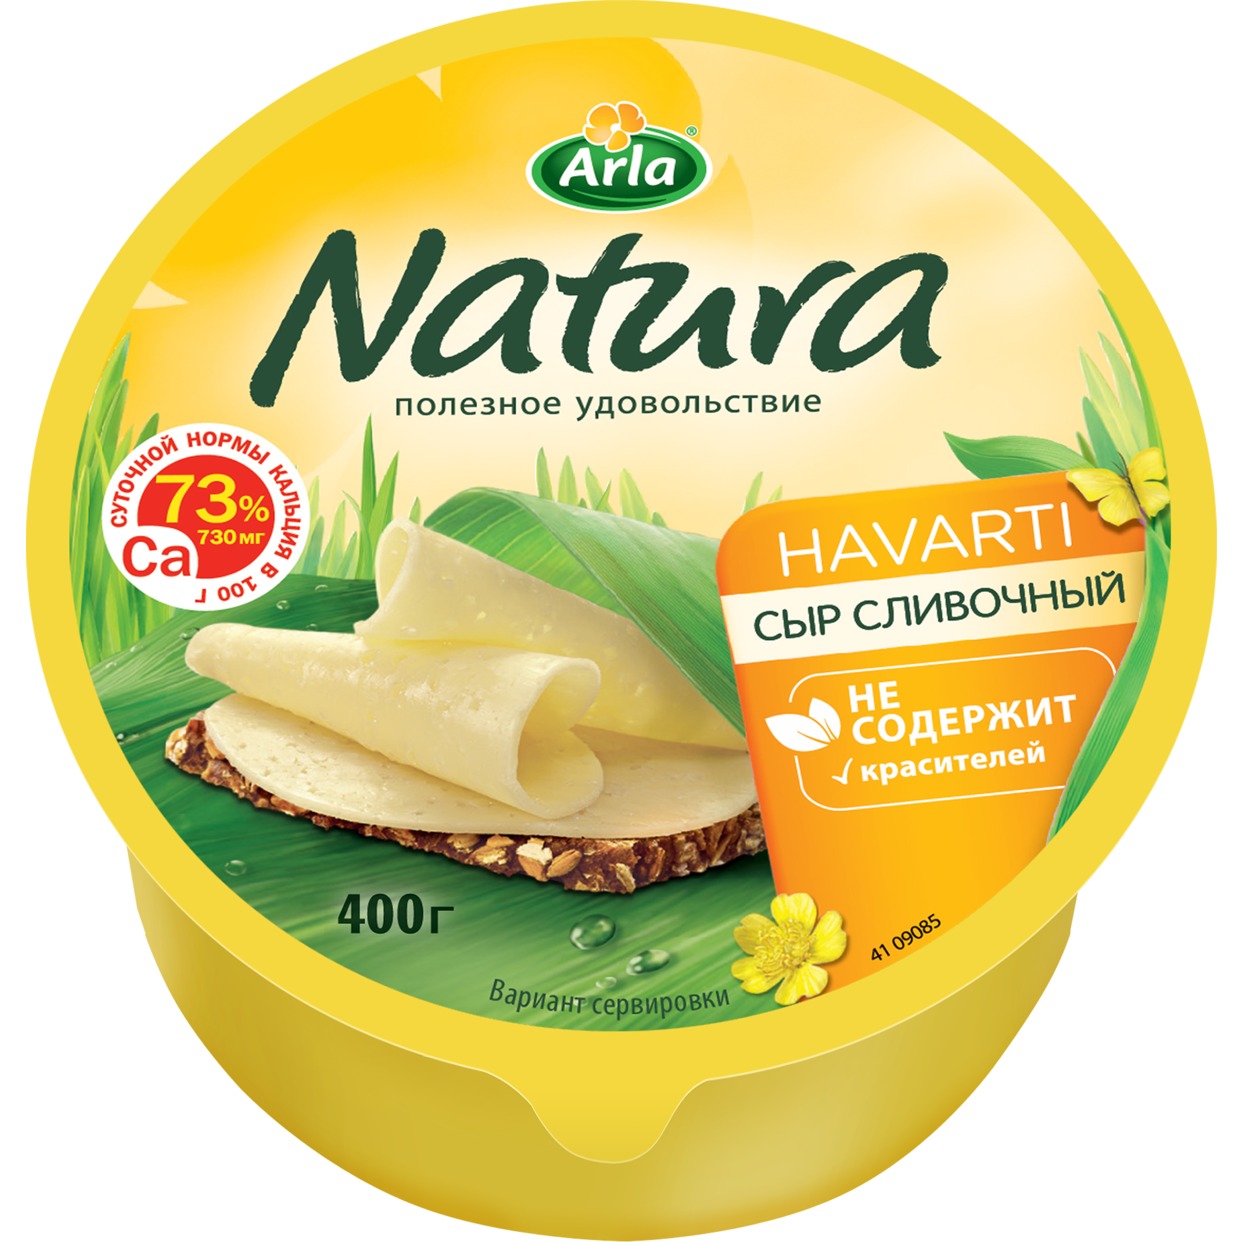 Сыр сливочный Arla Natura, 300 г по акции в Пятерочке